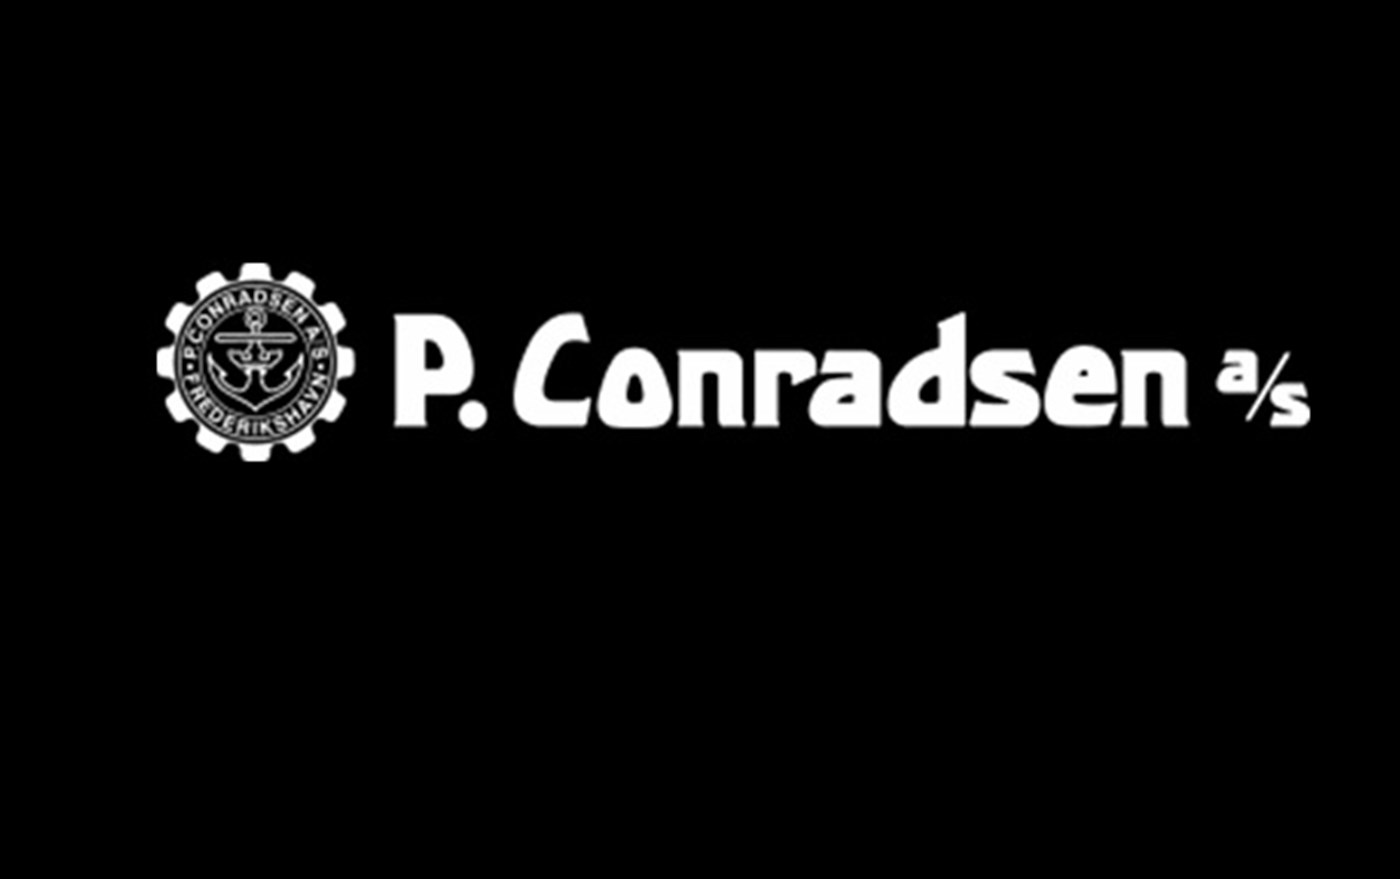 p conradsen